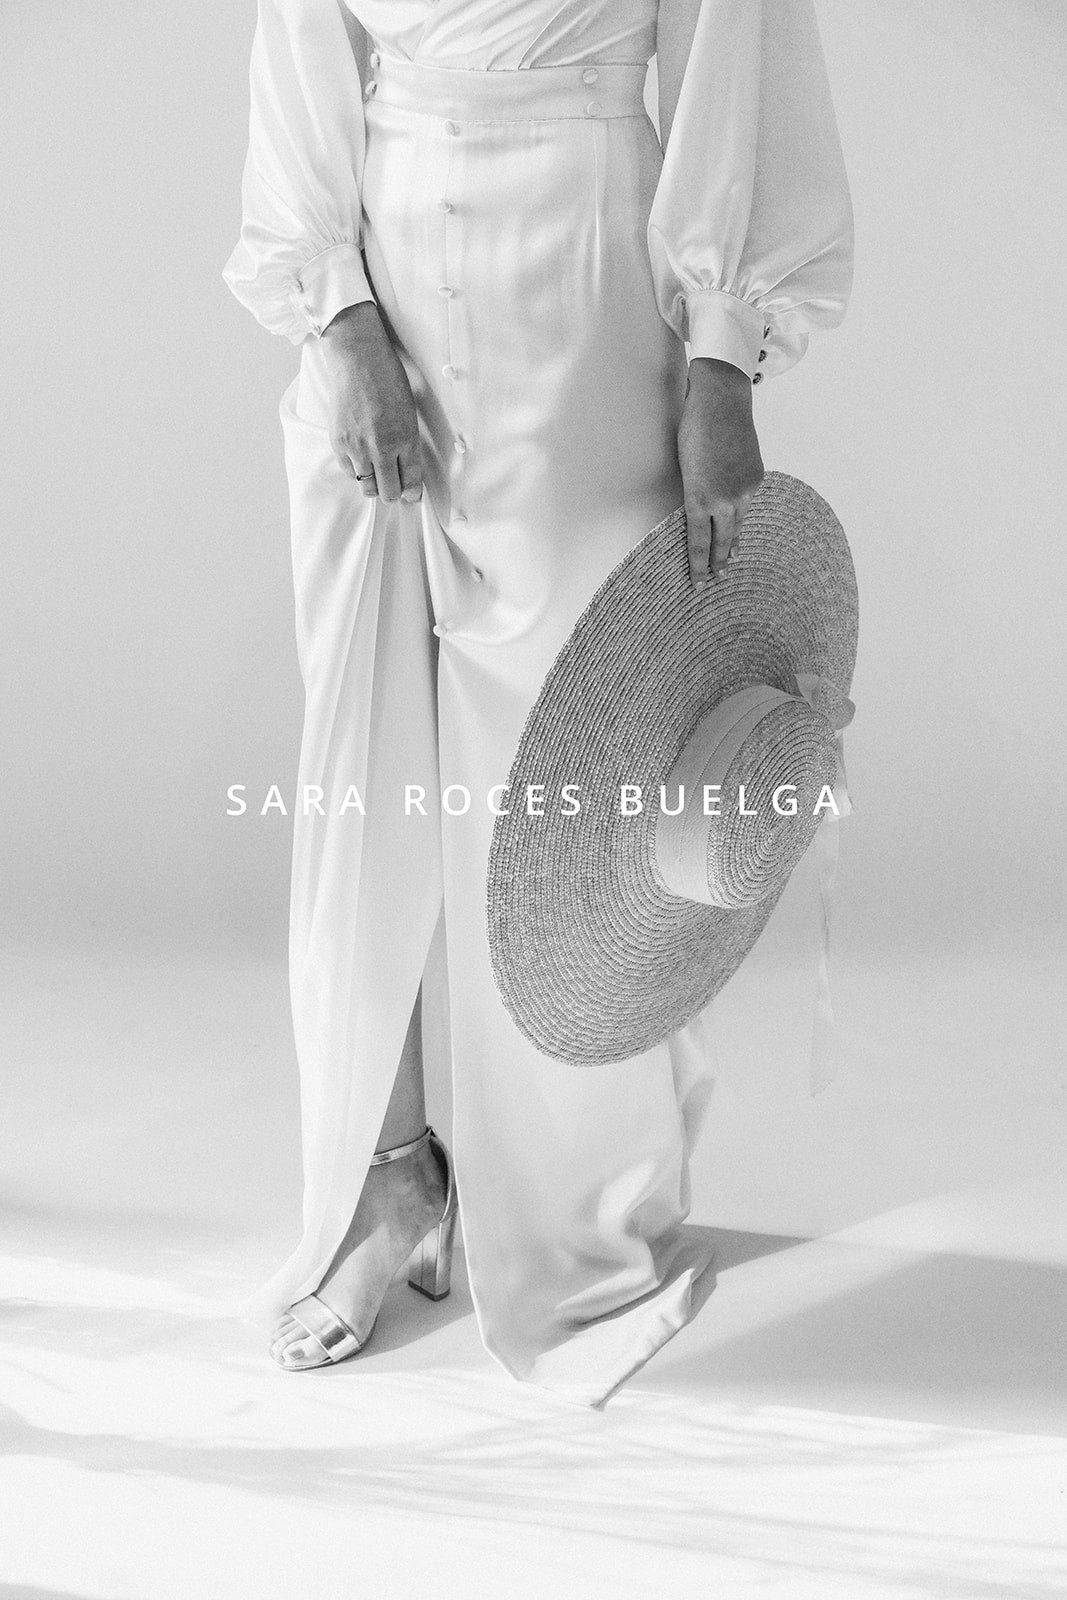 20200620 - Chiara pour Sara Roces Buelga - Studio (38)_websize